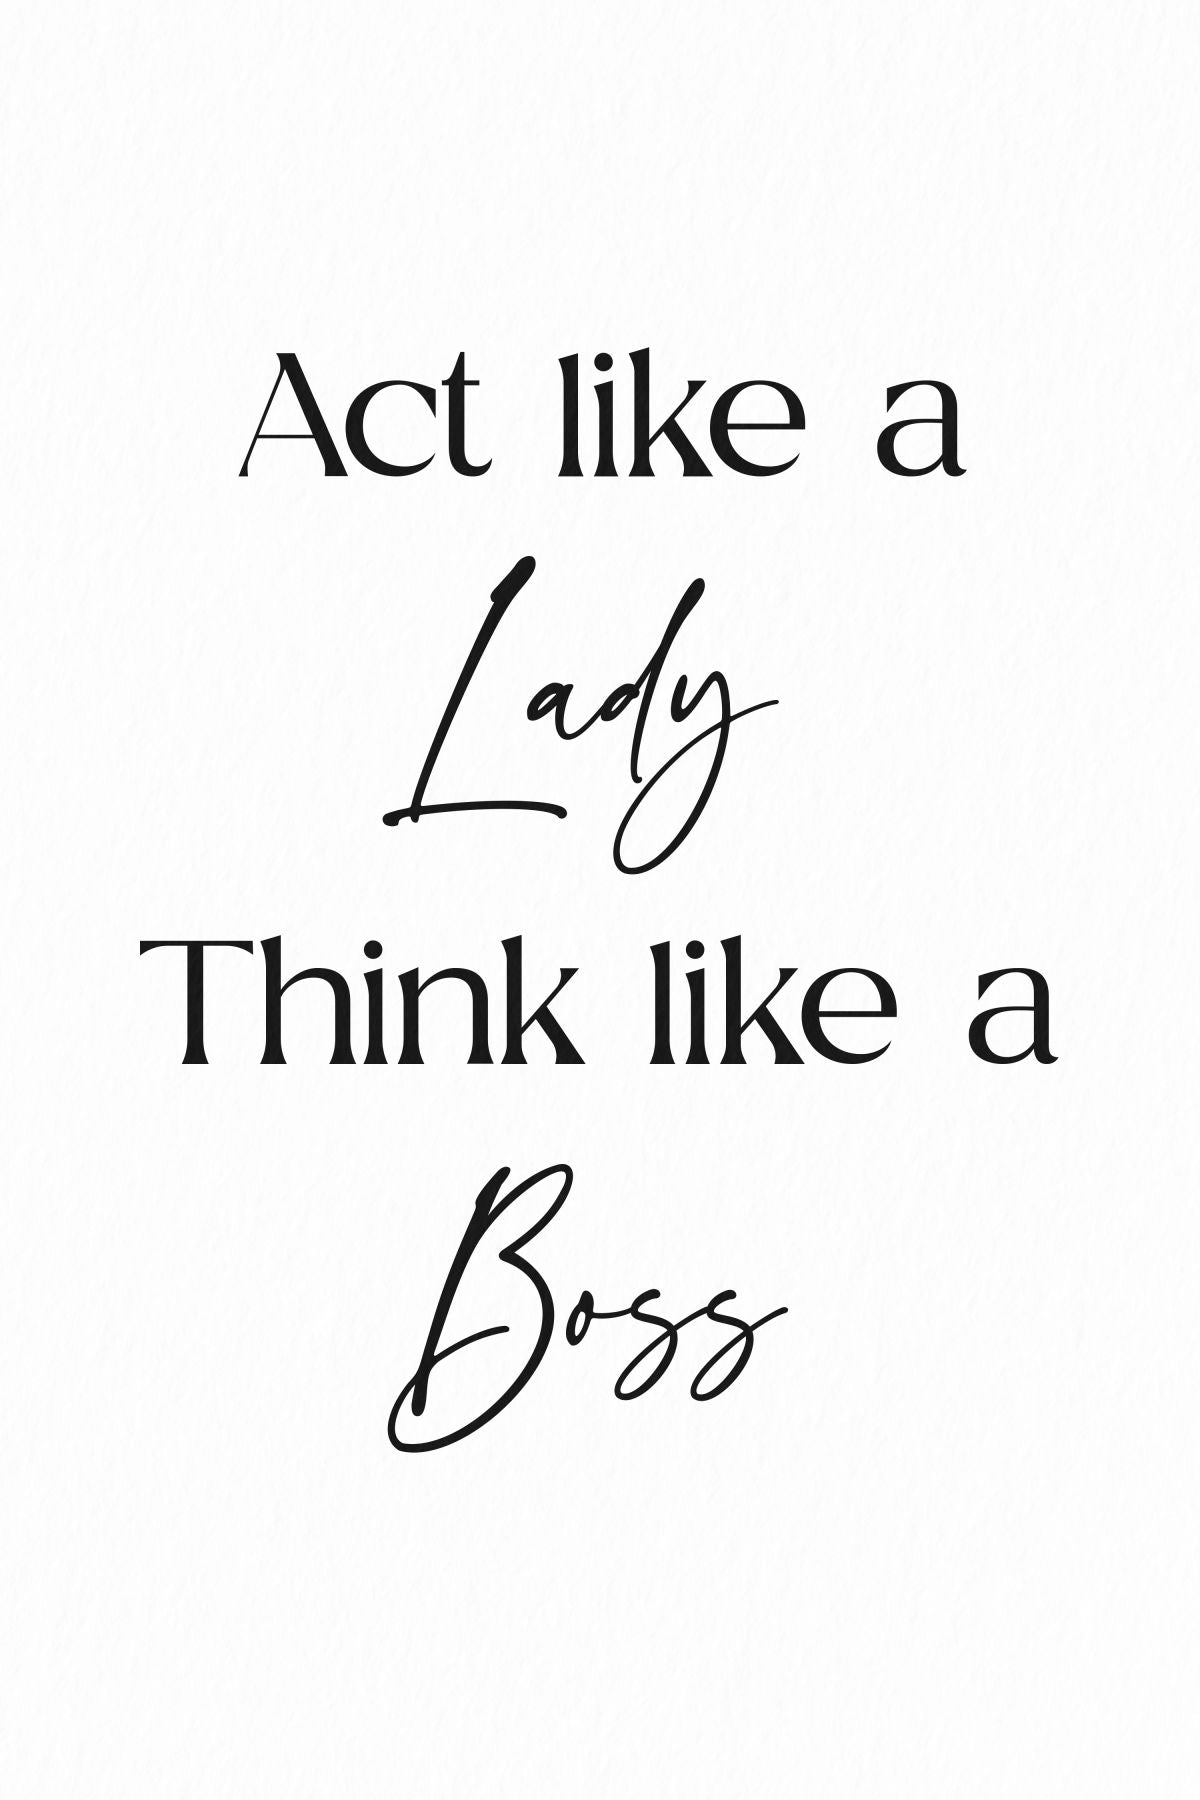 Lady Boss